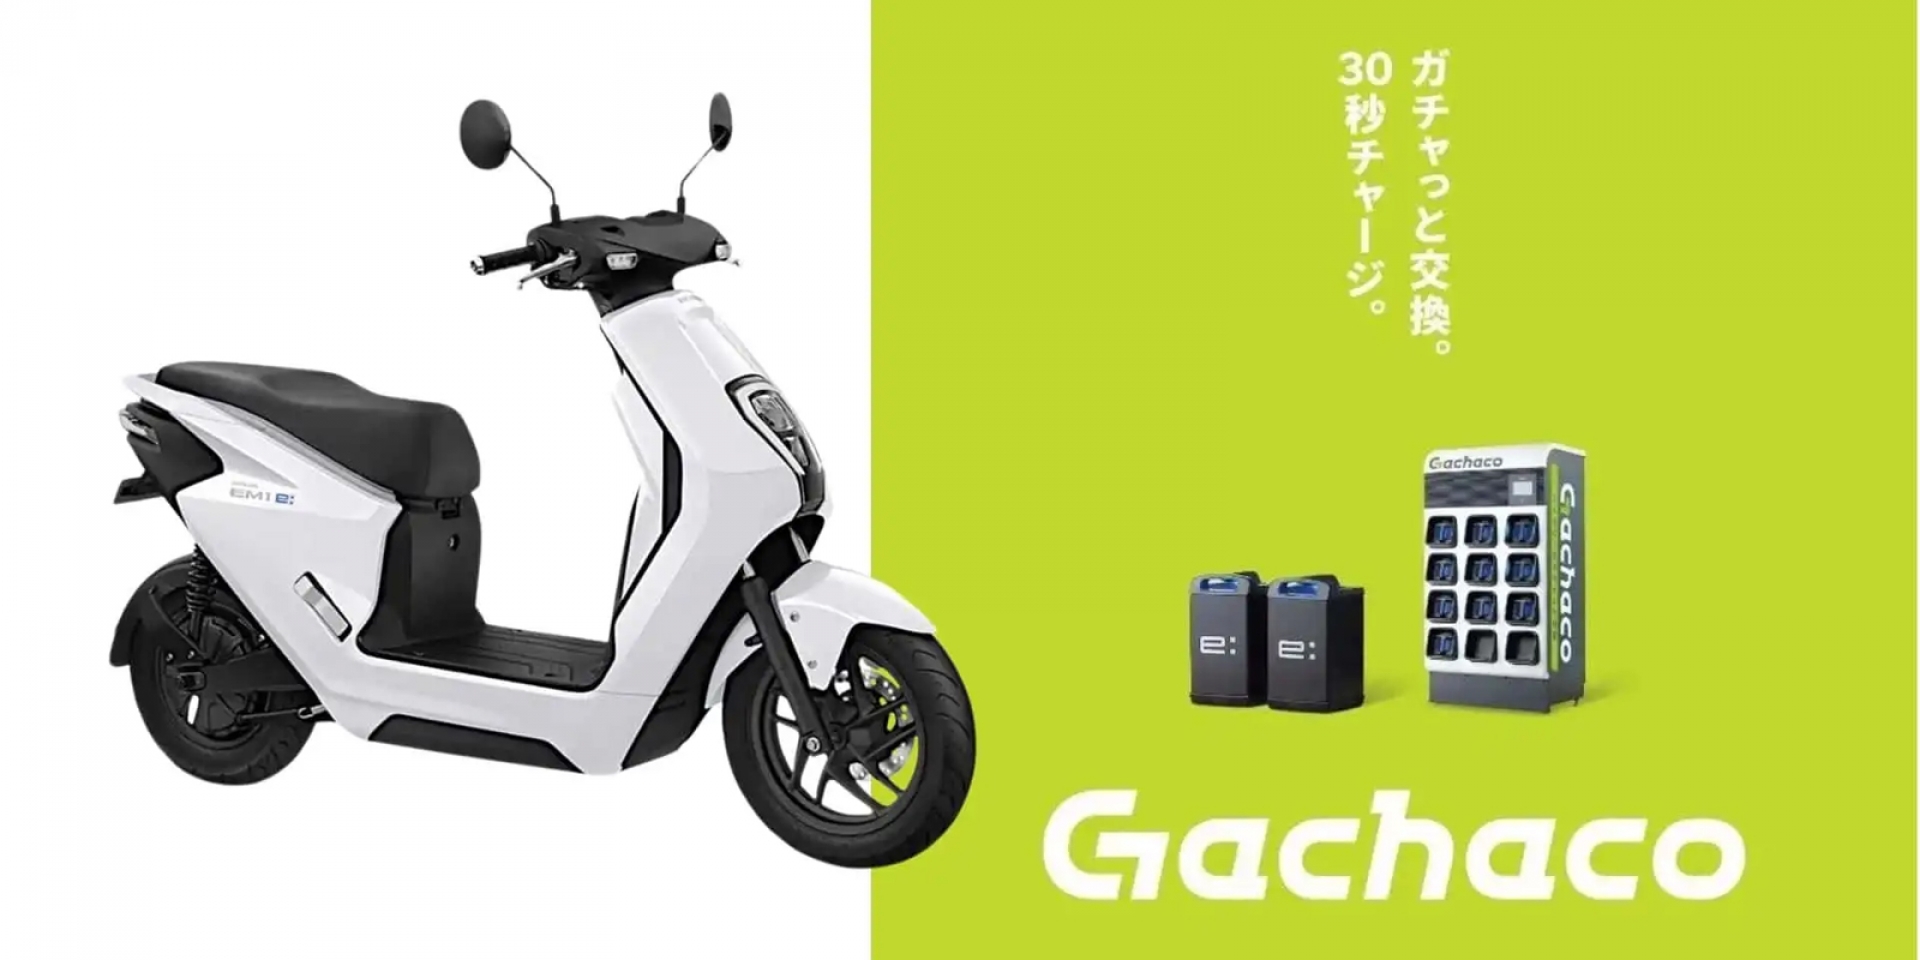 比Gogoro和Ionex更貴！日本Gachaco資費方案曝光，最低月租費233元台幣起。